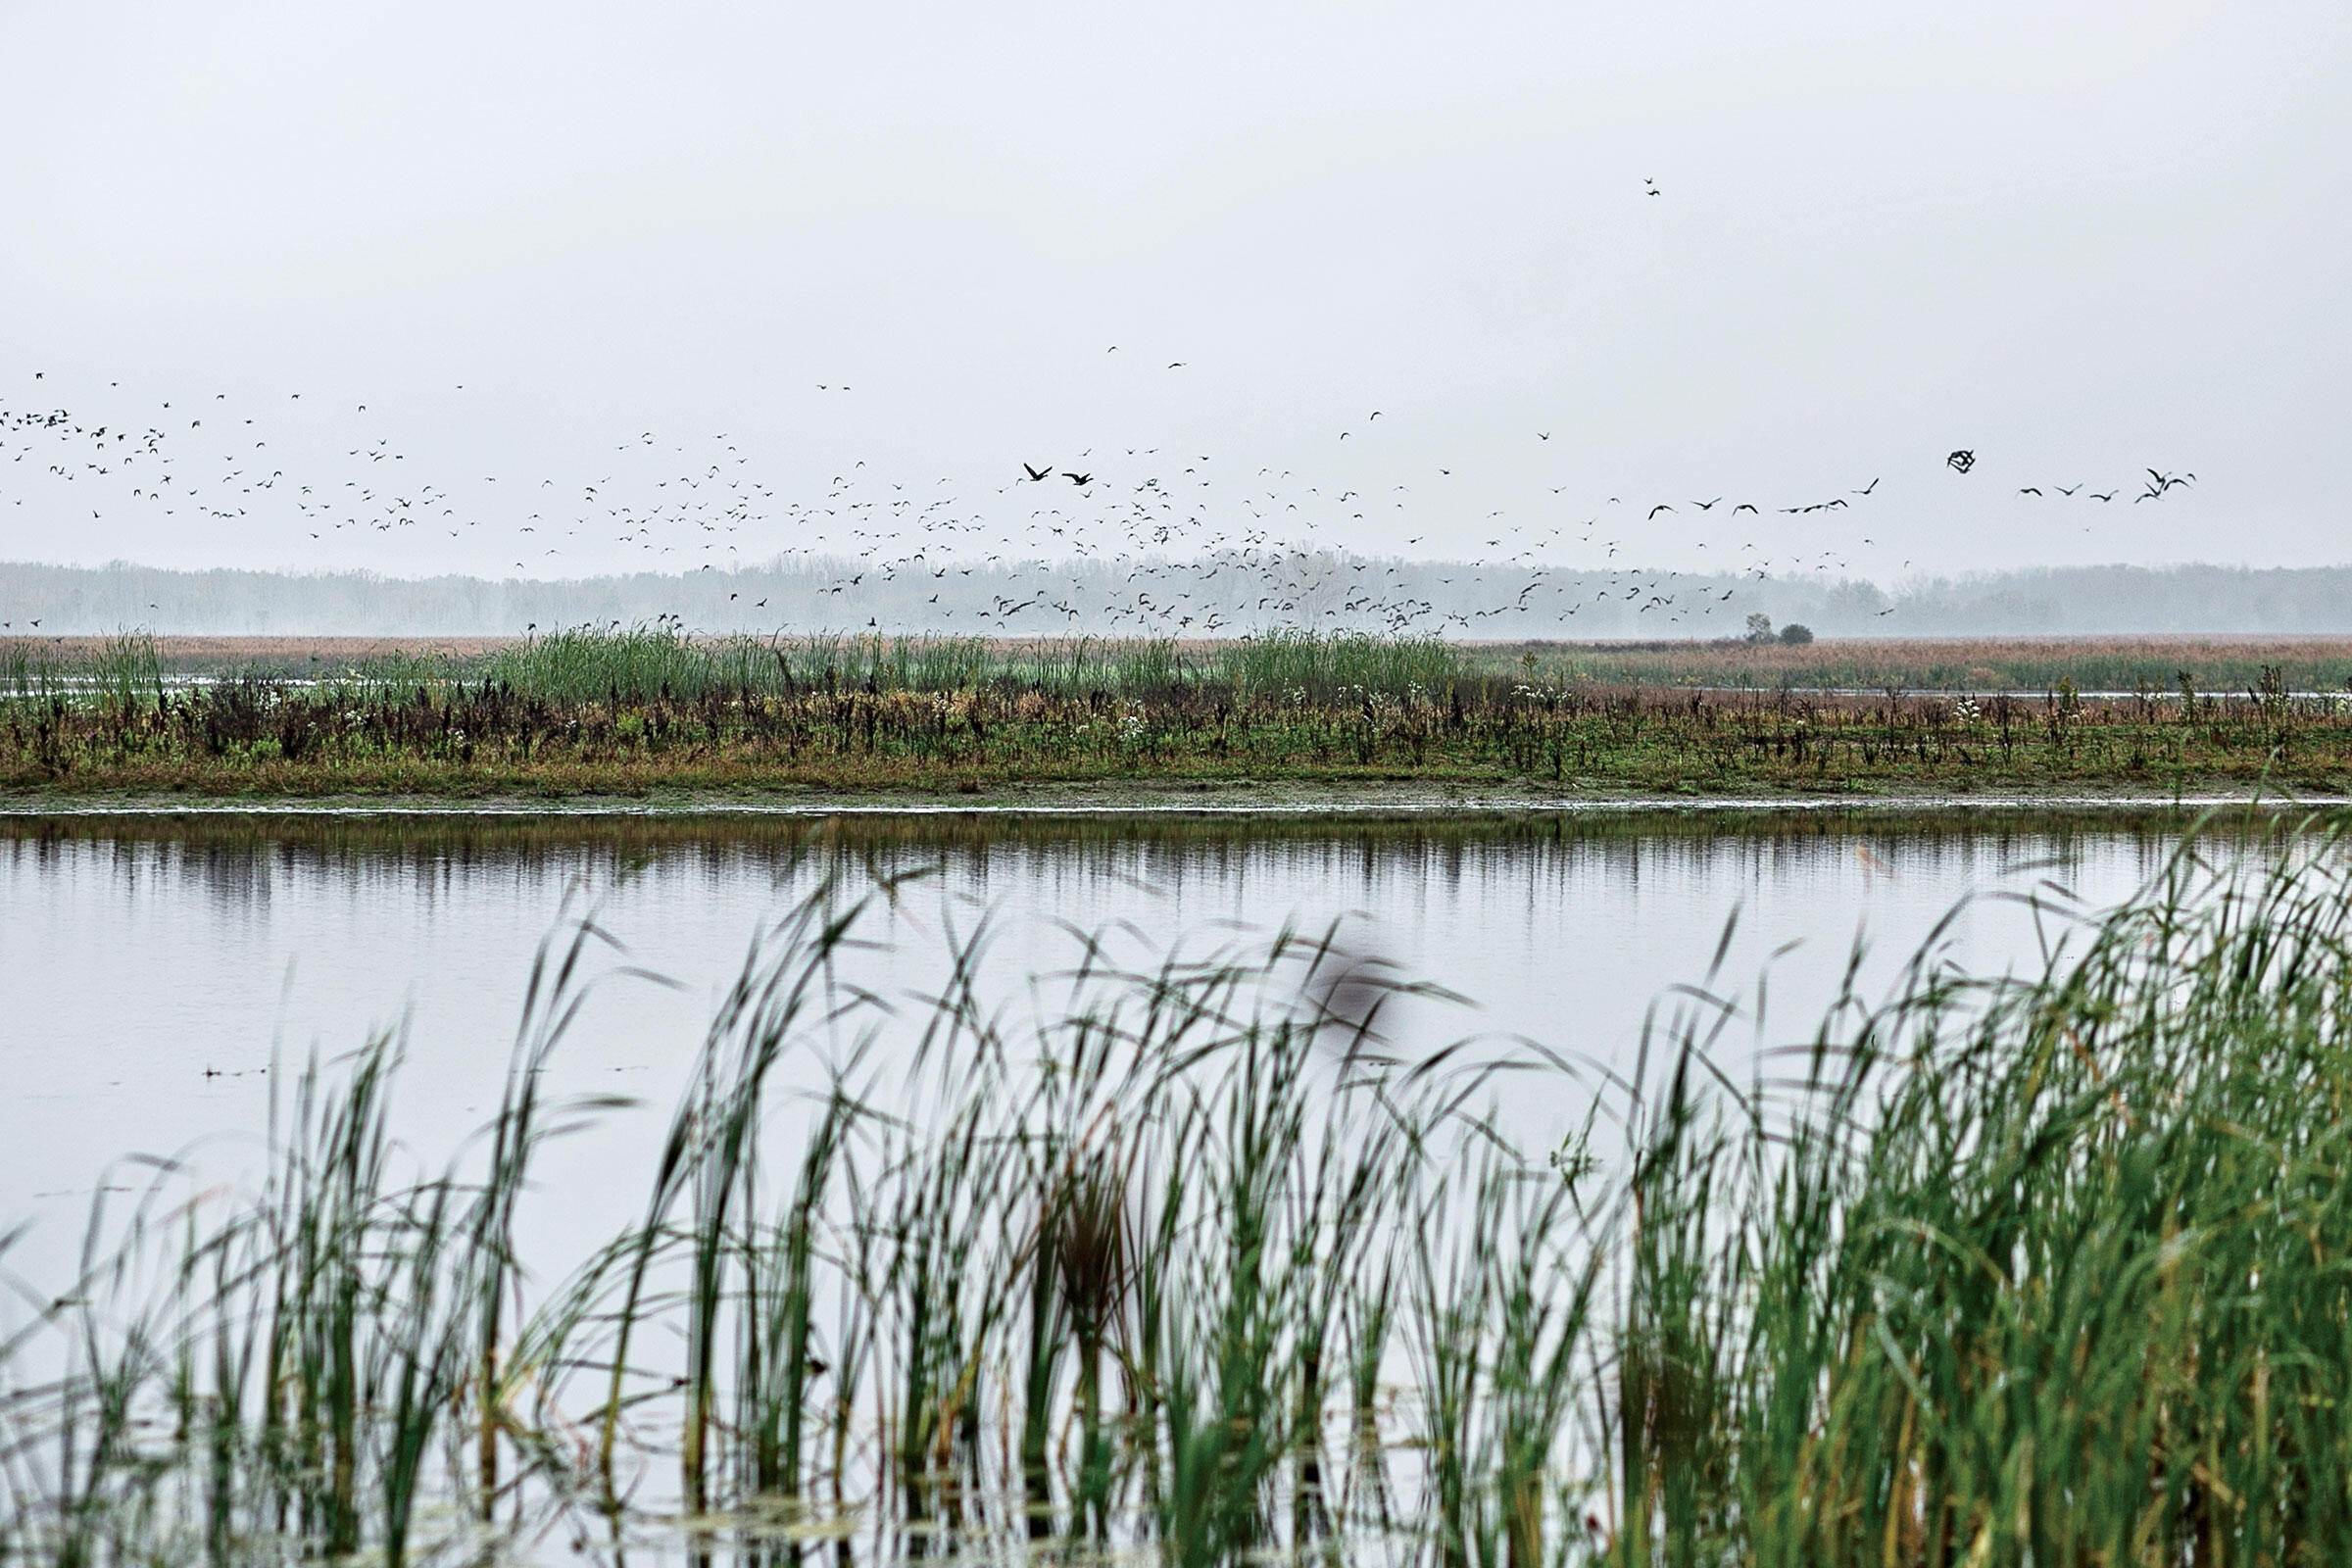 Waterfowl take flight on Oneida Nation's restored wetlands. Photo: Lianne Milton